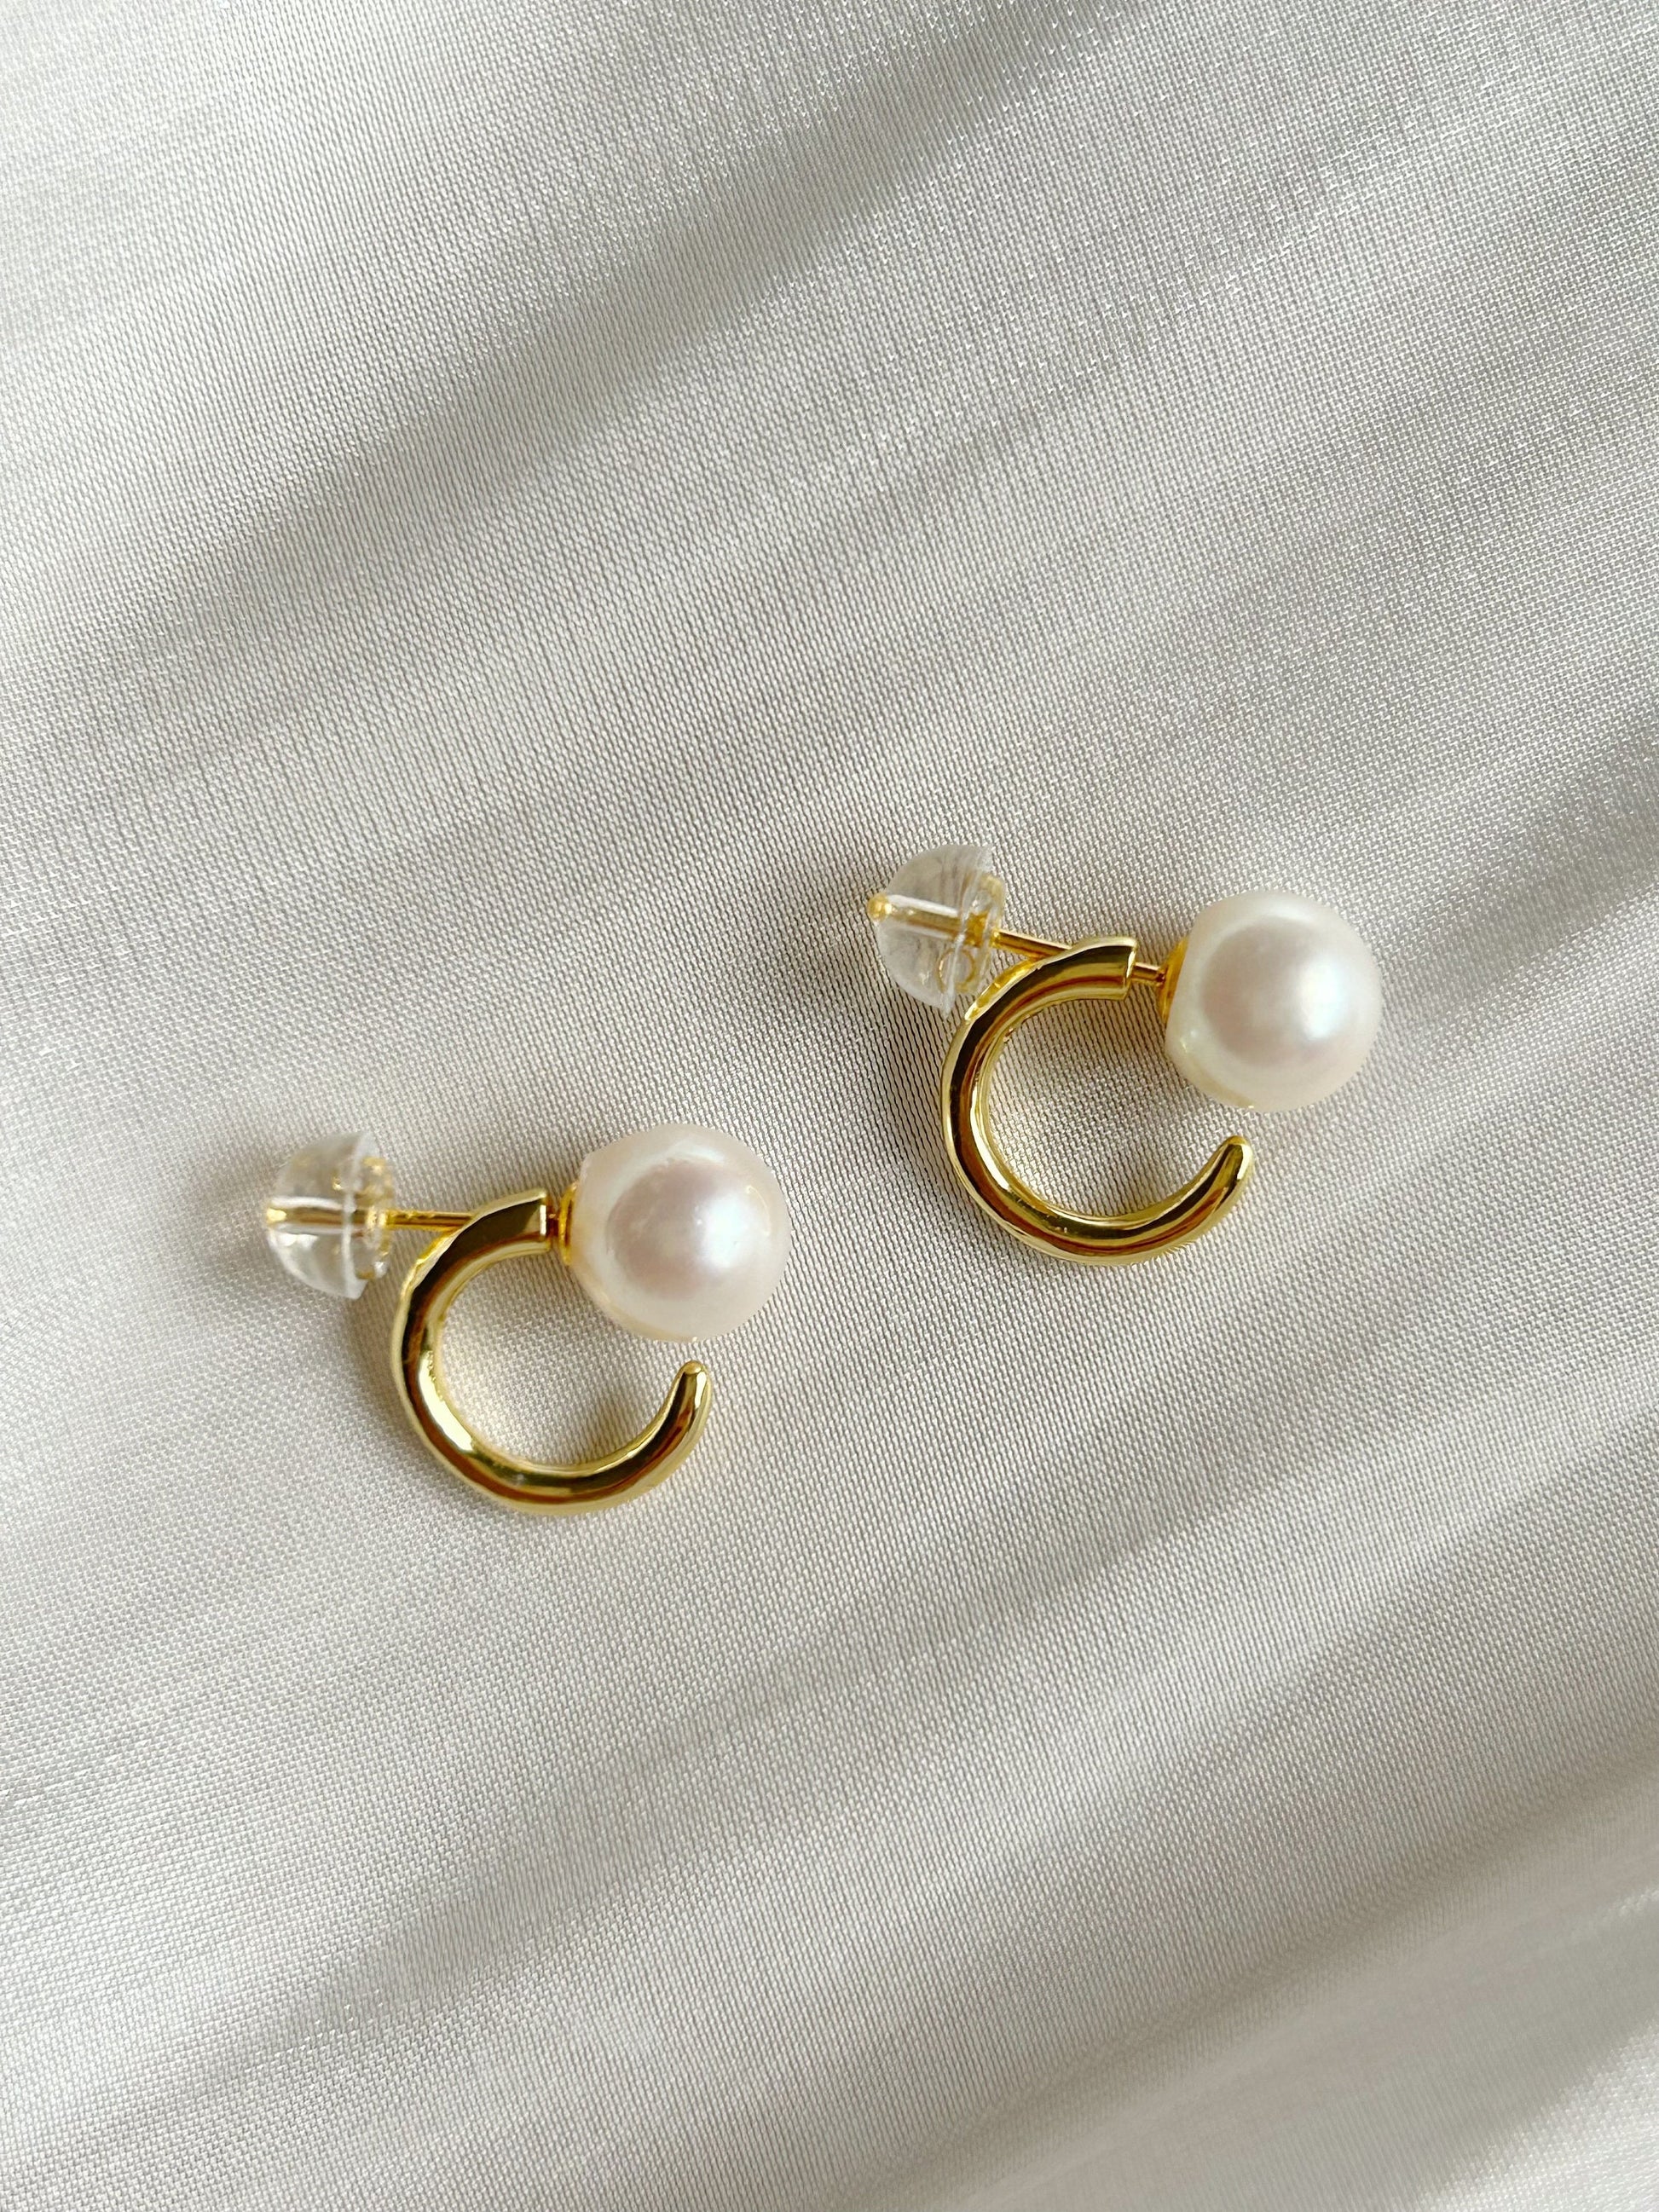 AK pearl ear stud, Two-way wearing ear stud, silver pearl earrings